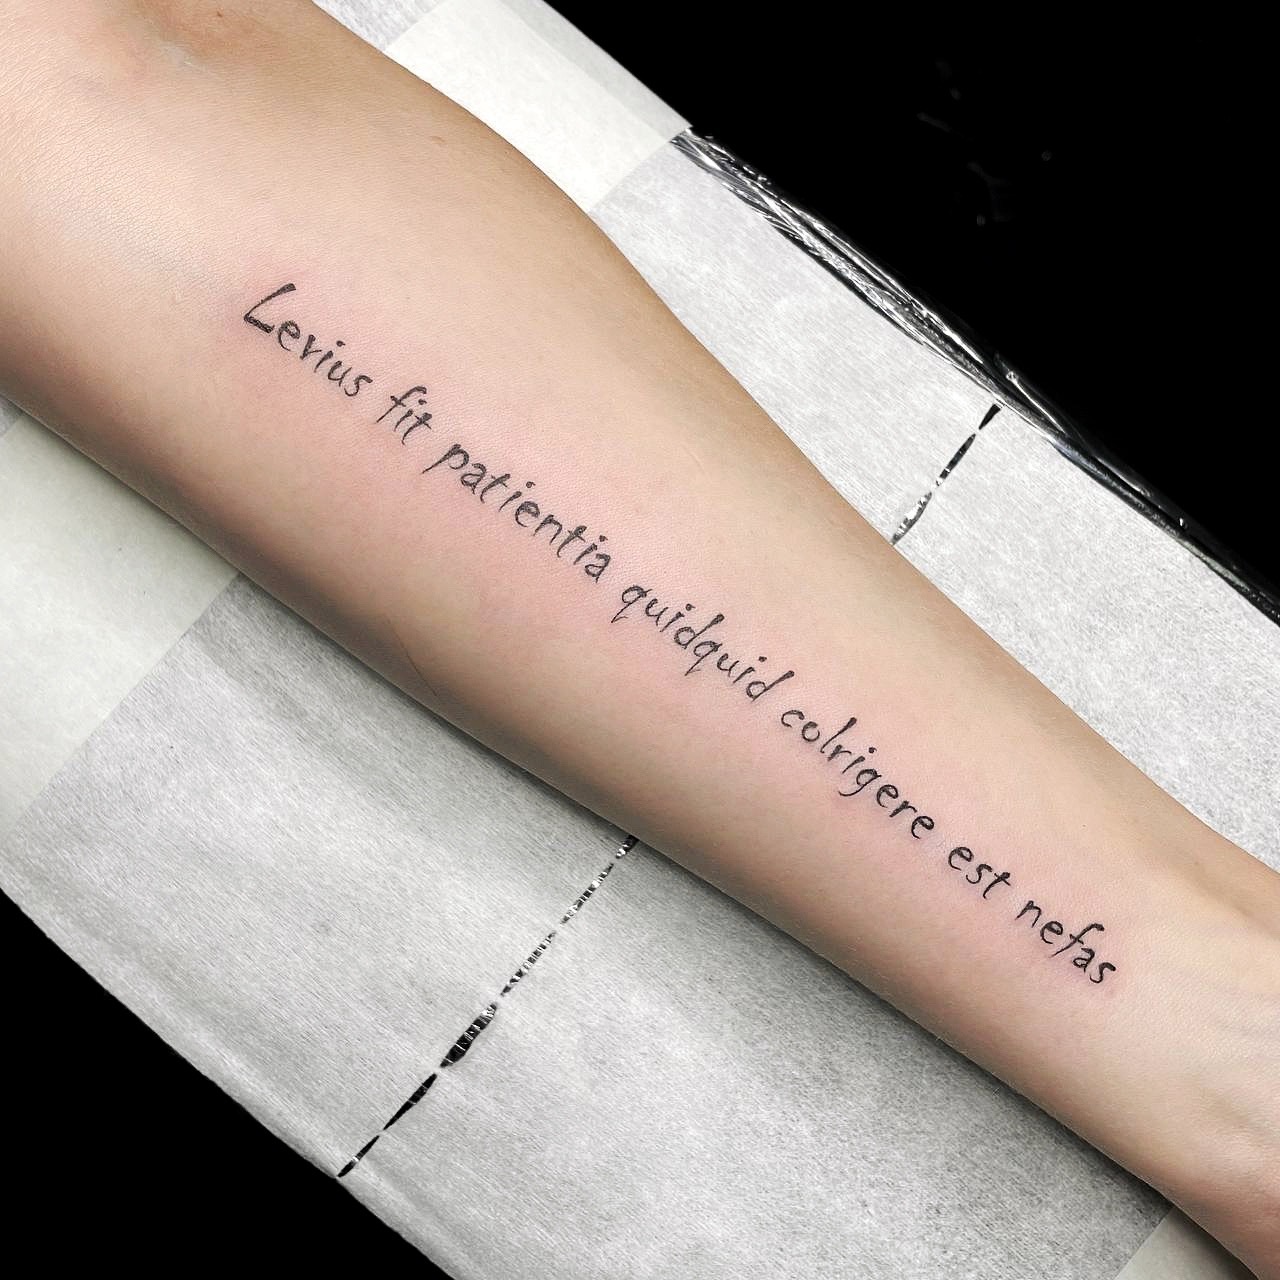 НАДПИСИ - о чём ВЫ думаете,когда выбираете татуировку в виде надписи? | VK